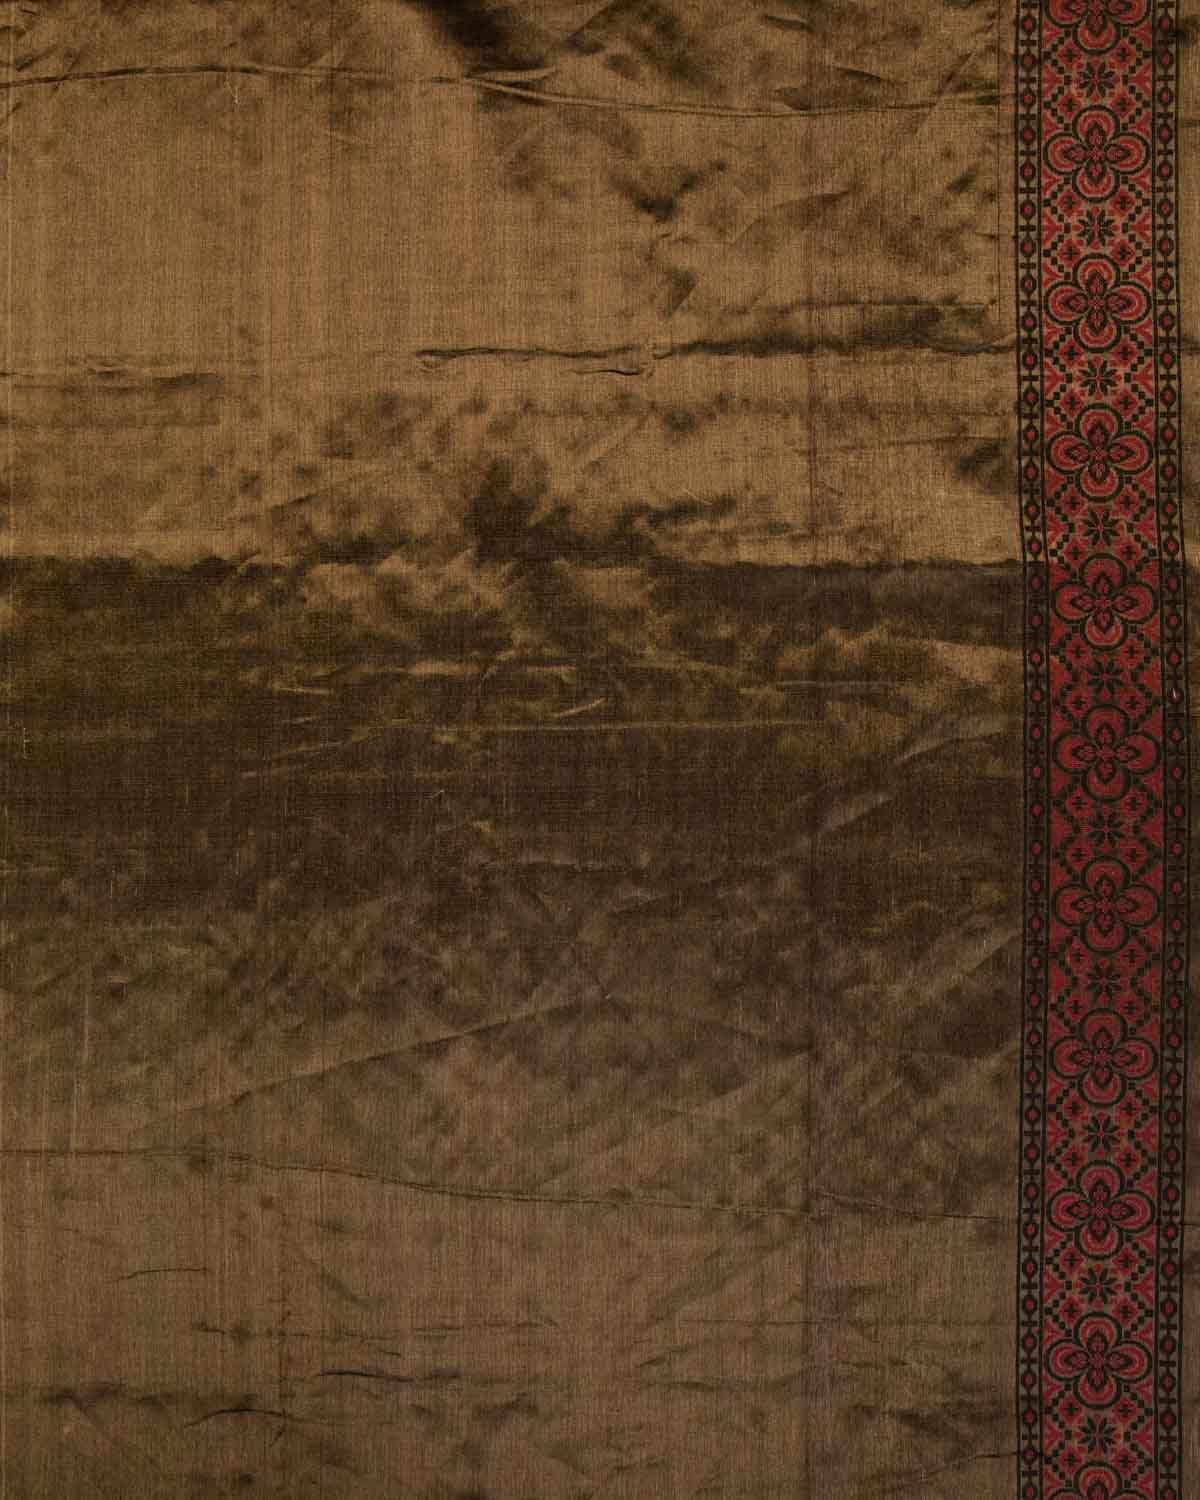 Metallic Black Banarasi Red & Black Butis Cutwork Brocade Woven Cotton Tissue Saree-HolyWeaves